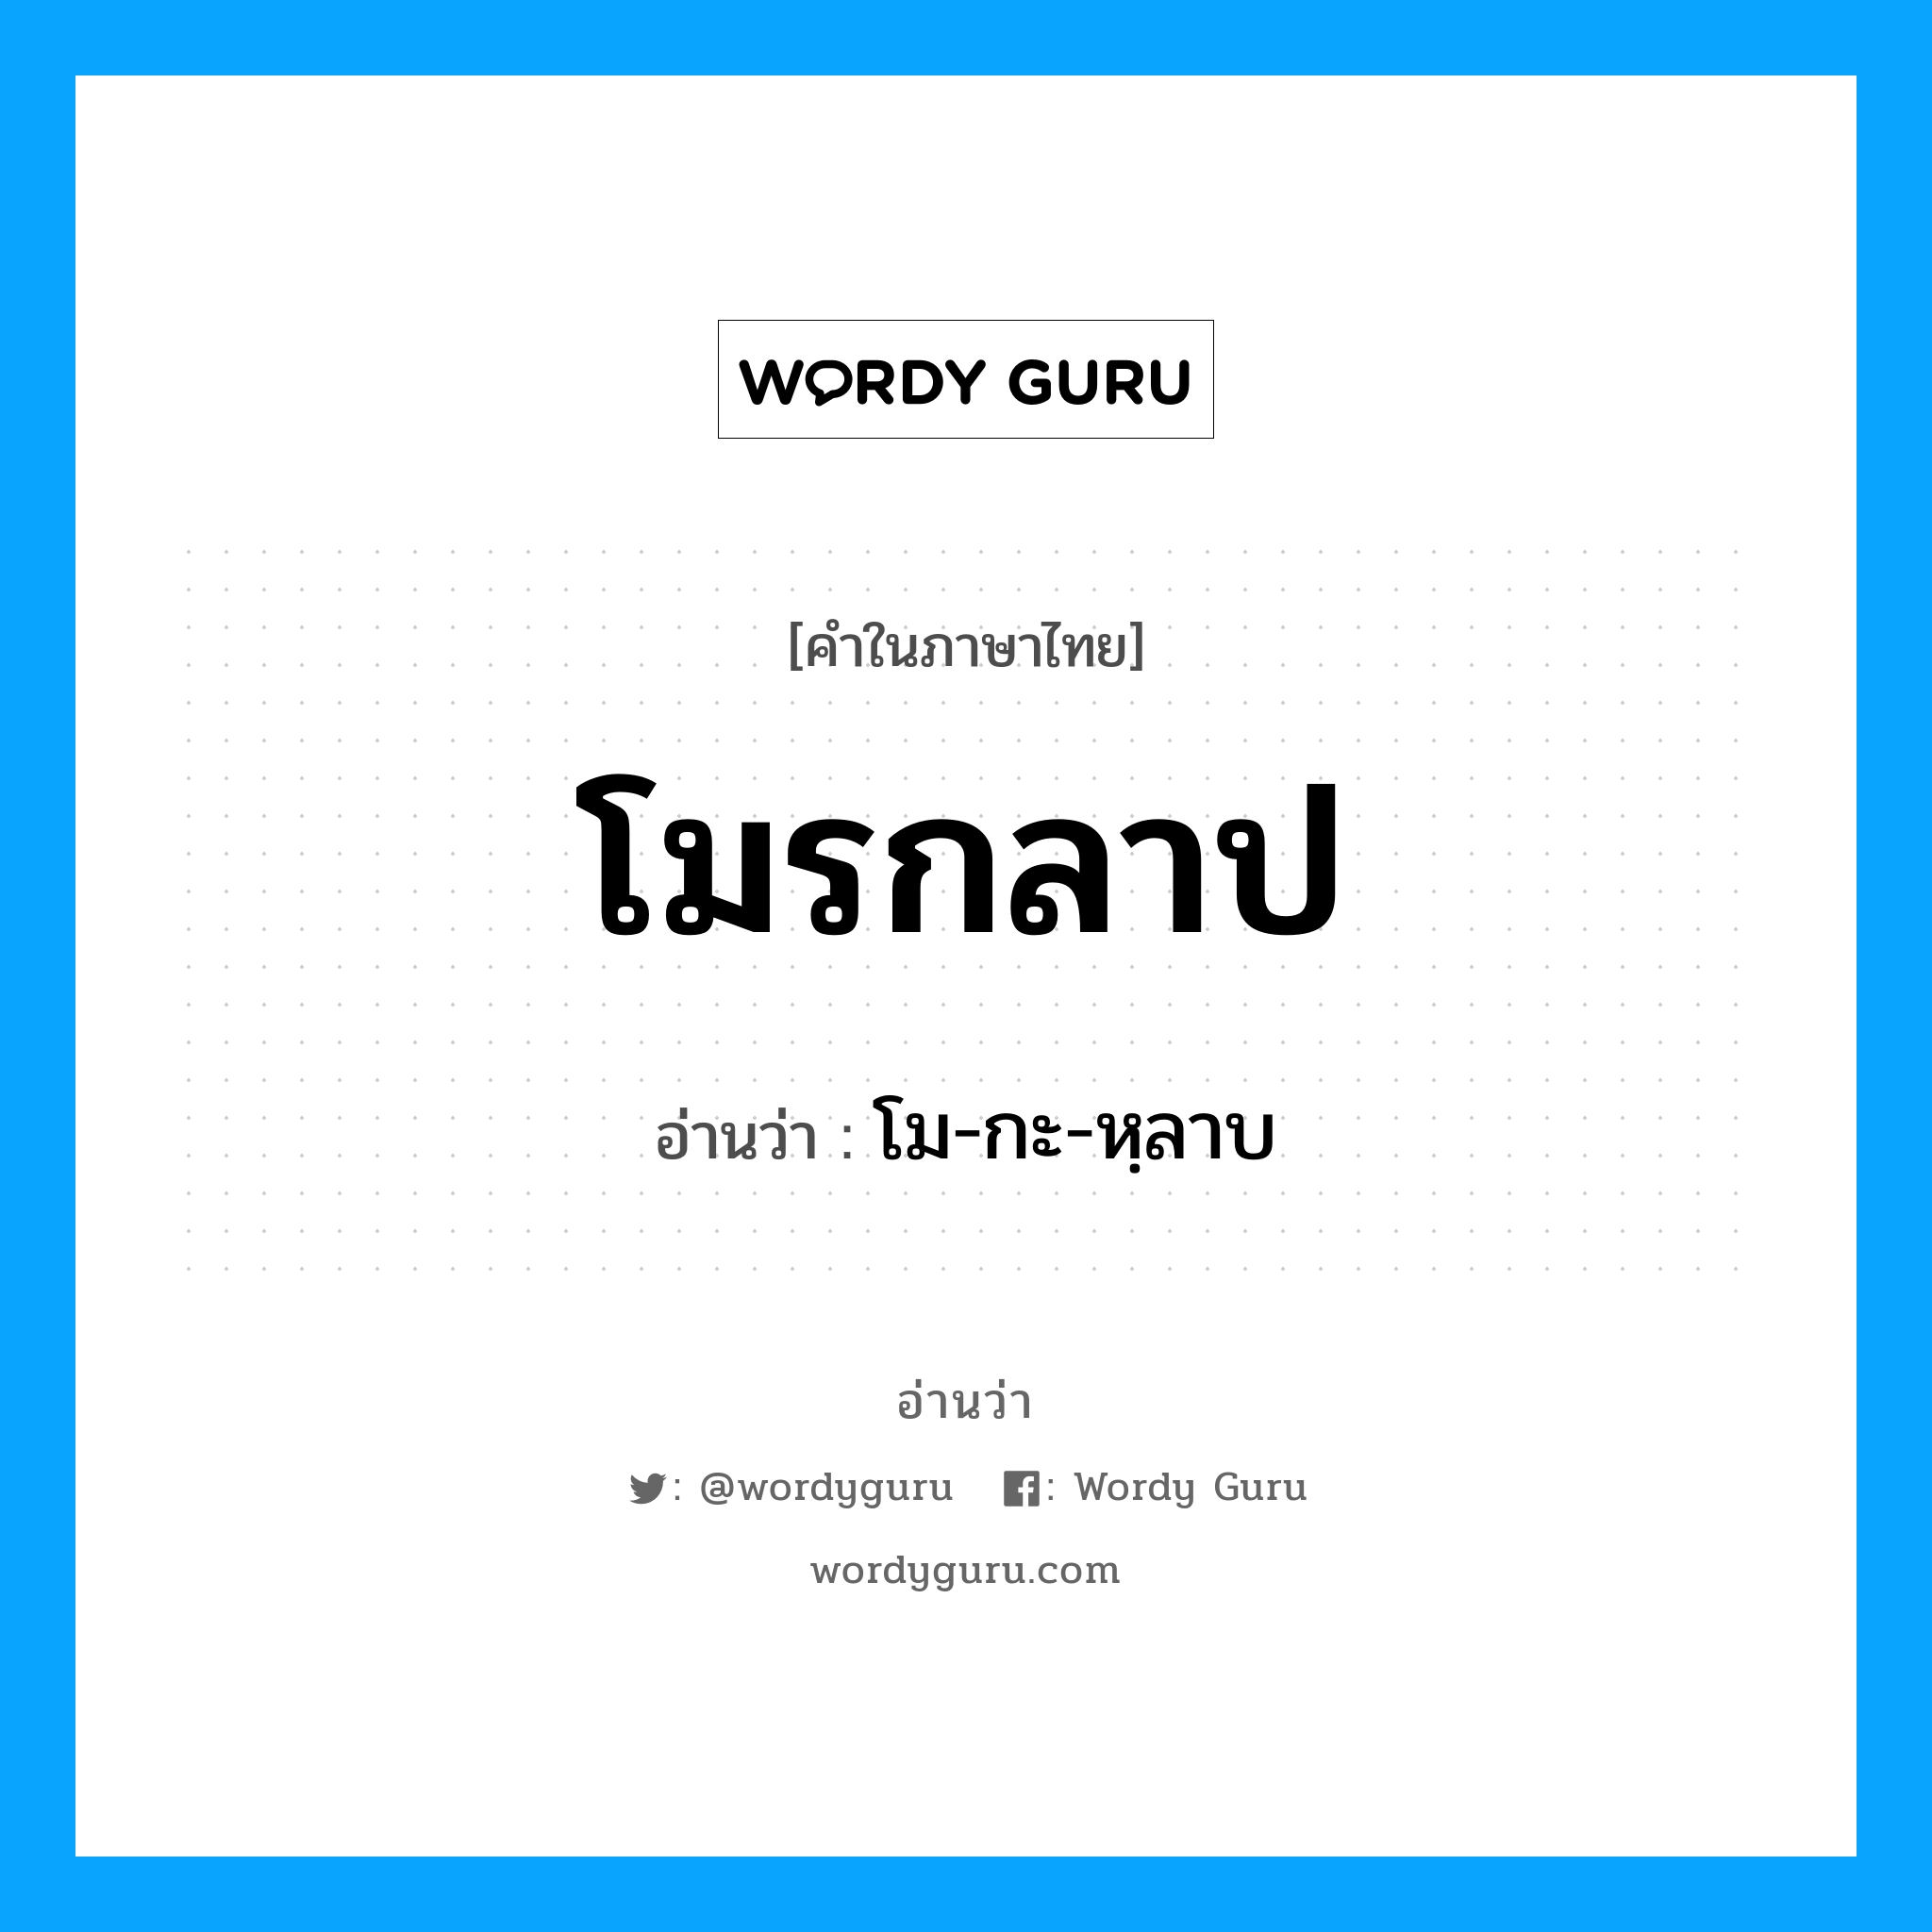 โม-กะ-หฺลาบ เป็นคำอ่านของคำไหน?, คำในภาษาไทย โม-กะ-หฺลาบ อ่านว่า โมรกลาป